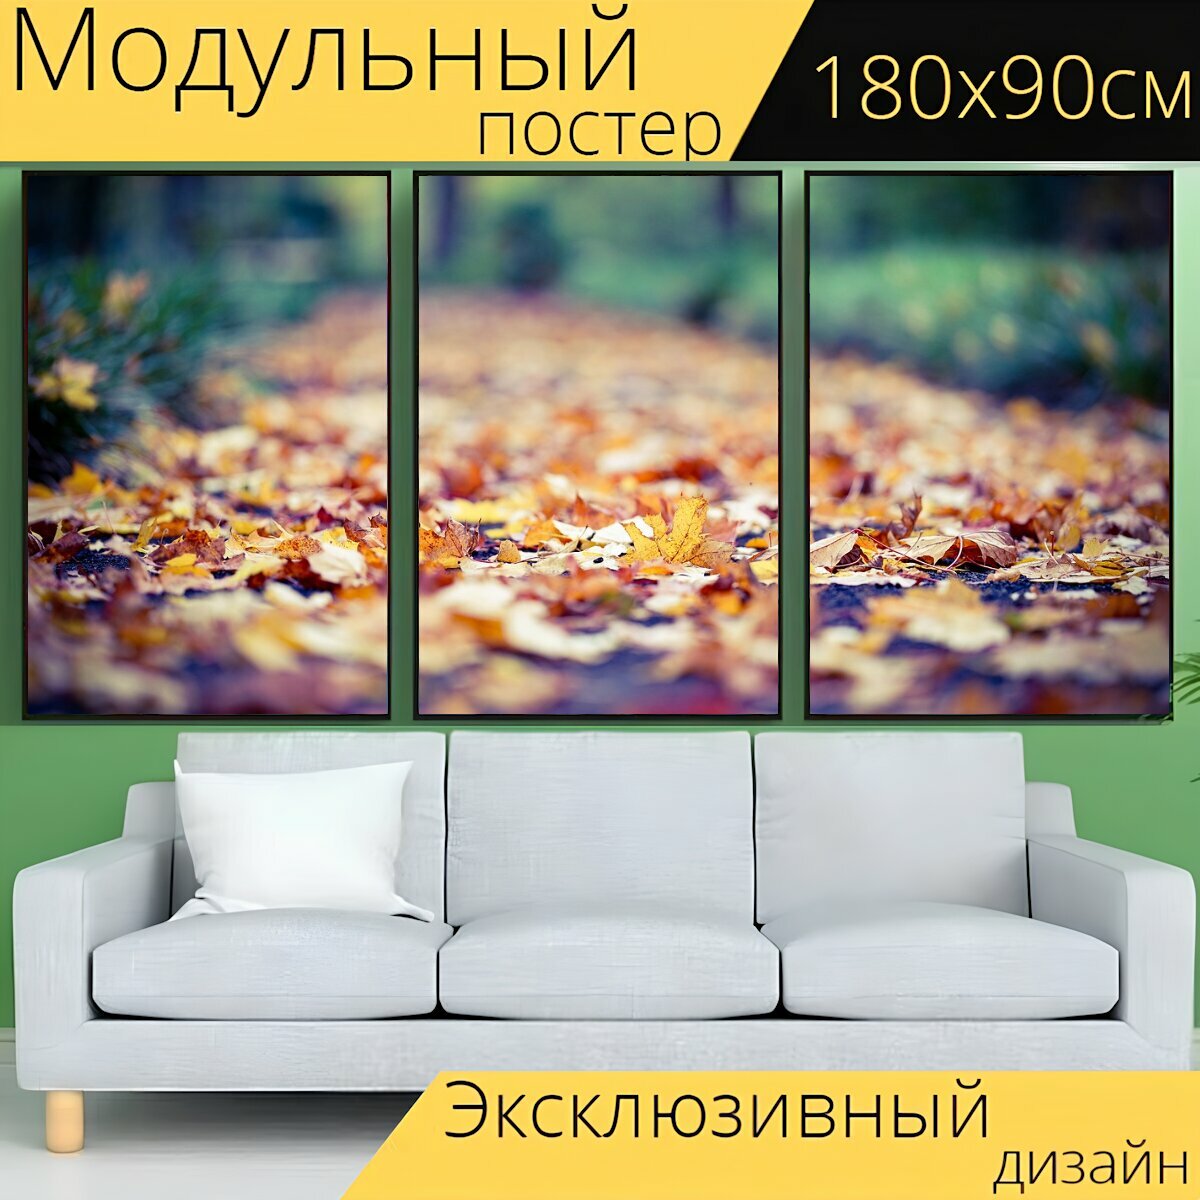 Модульный постер "Листья, листва, осень" 180 x 90 см. для интерьера